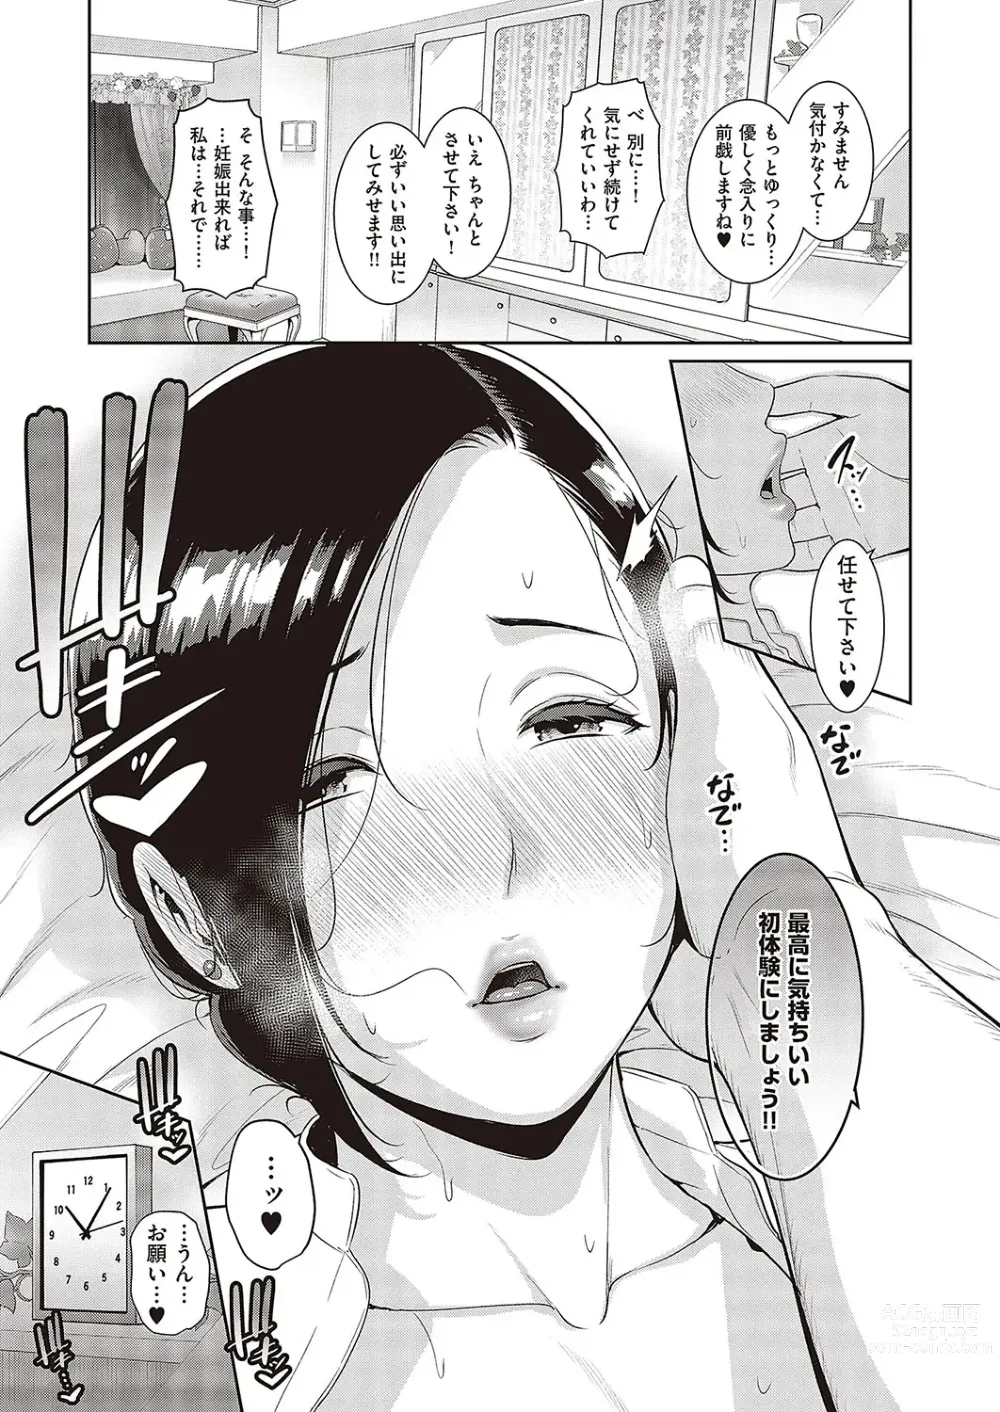 Page 11 of manga 種付けマッチングアプリ Cap.1-2